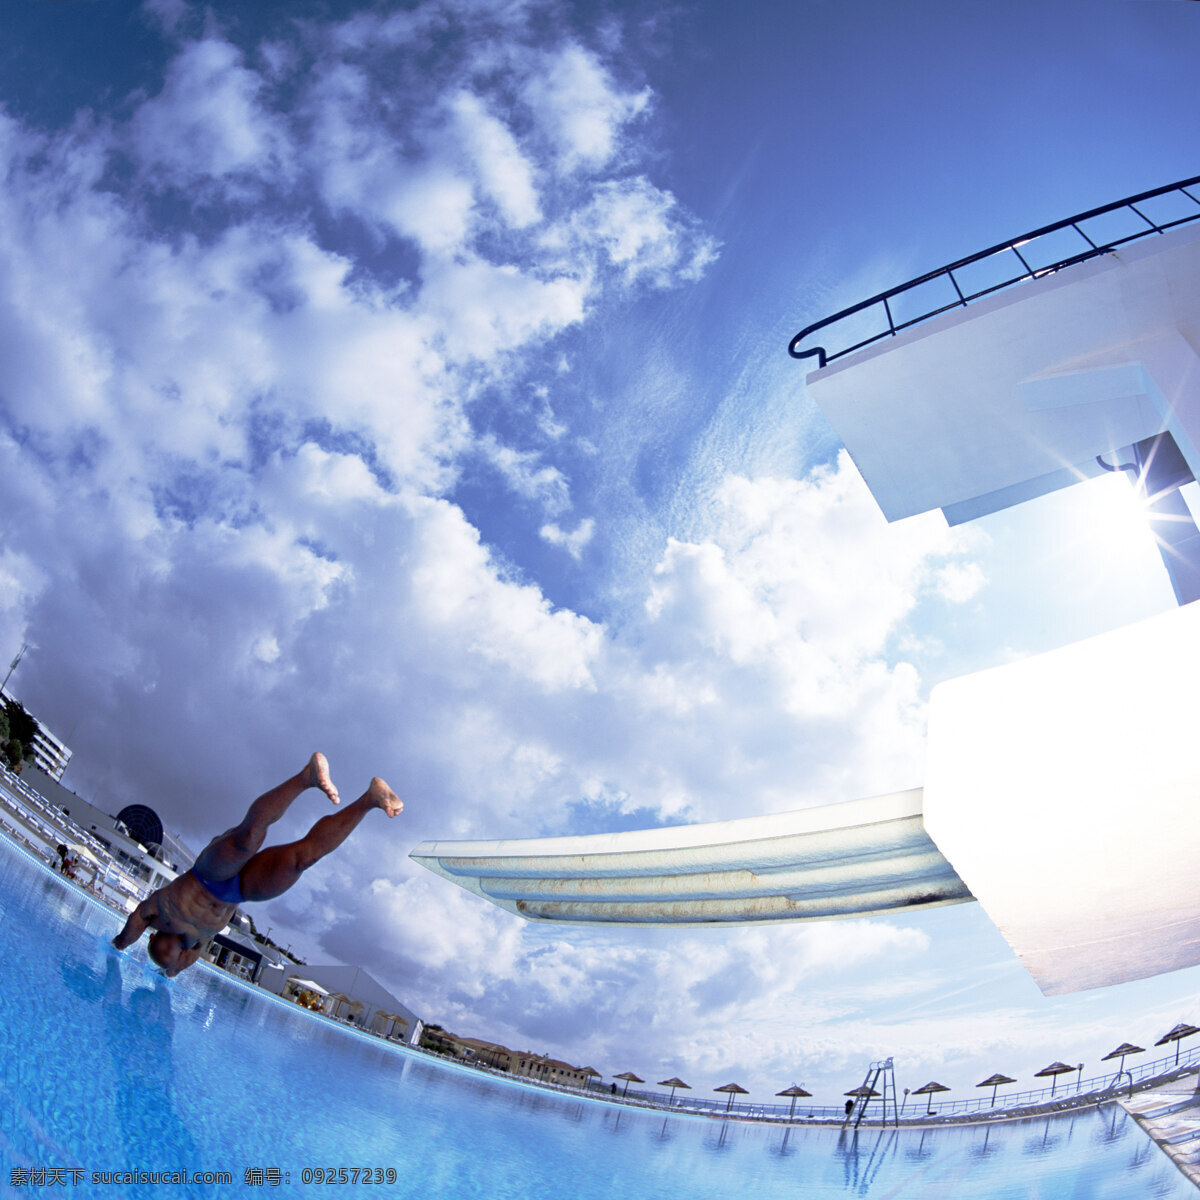 跳水 跳板 跳台 跳水准备 跳水运动 跳水运动员 跳水比赛 蓝色水池 纵身一跃 蓝天 白云 体育运动 文化艺术